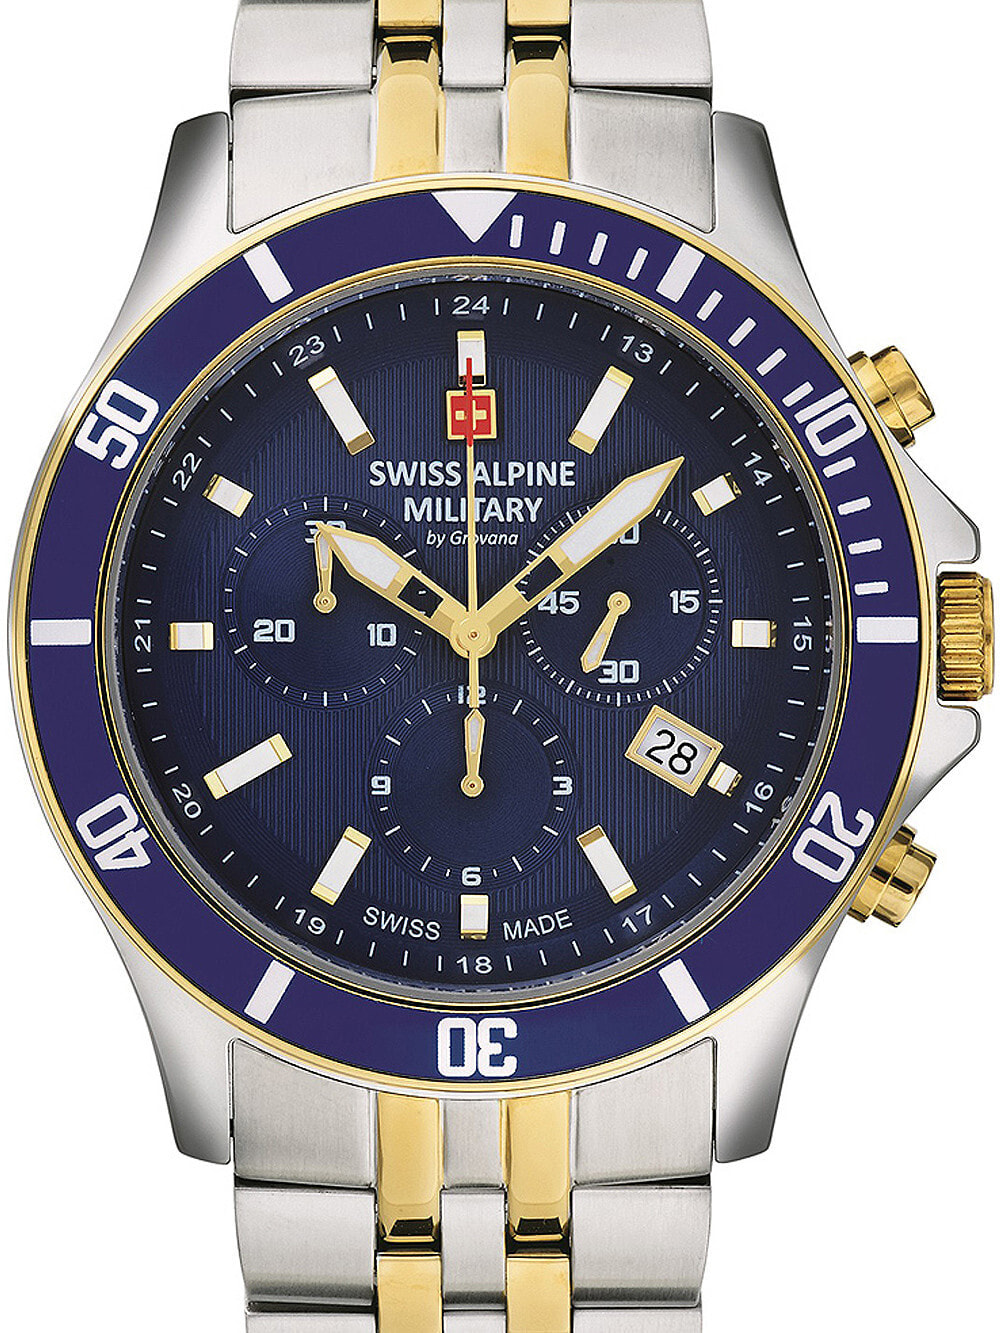 Мужские наручные часы с серебряным браслетом Swiss Alpine Military 7022.9145 chronograph 42mm 10ATM